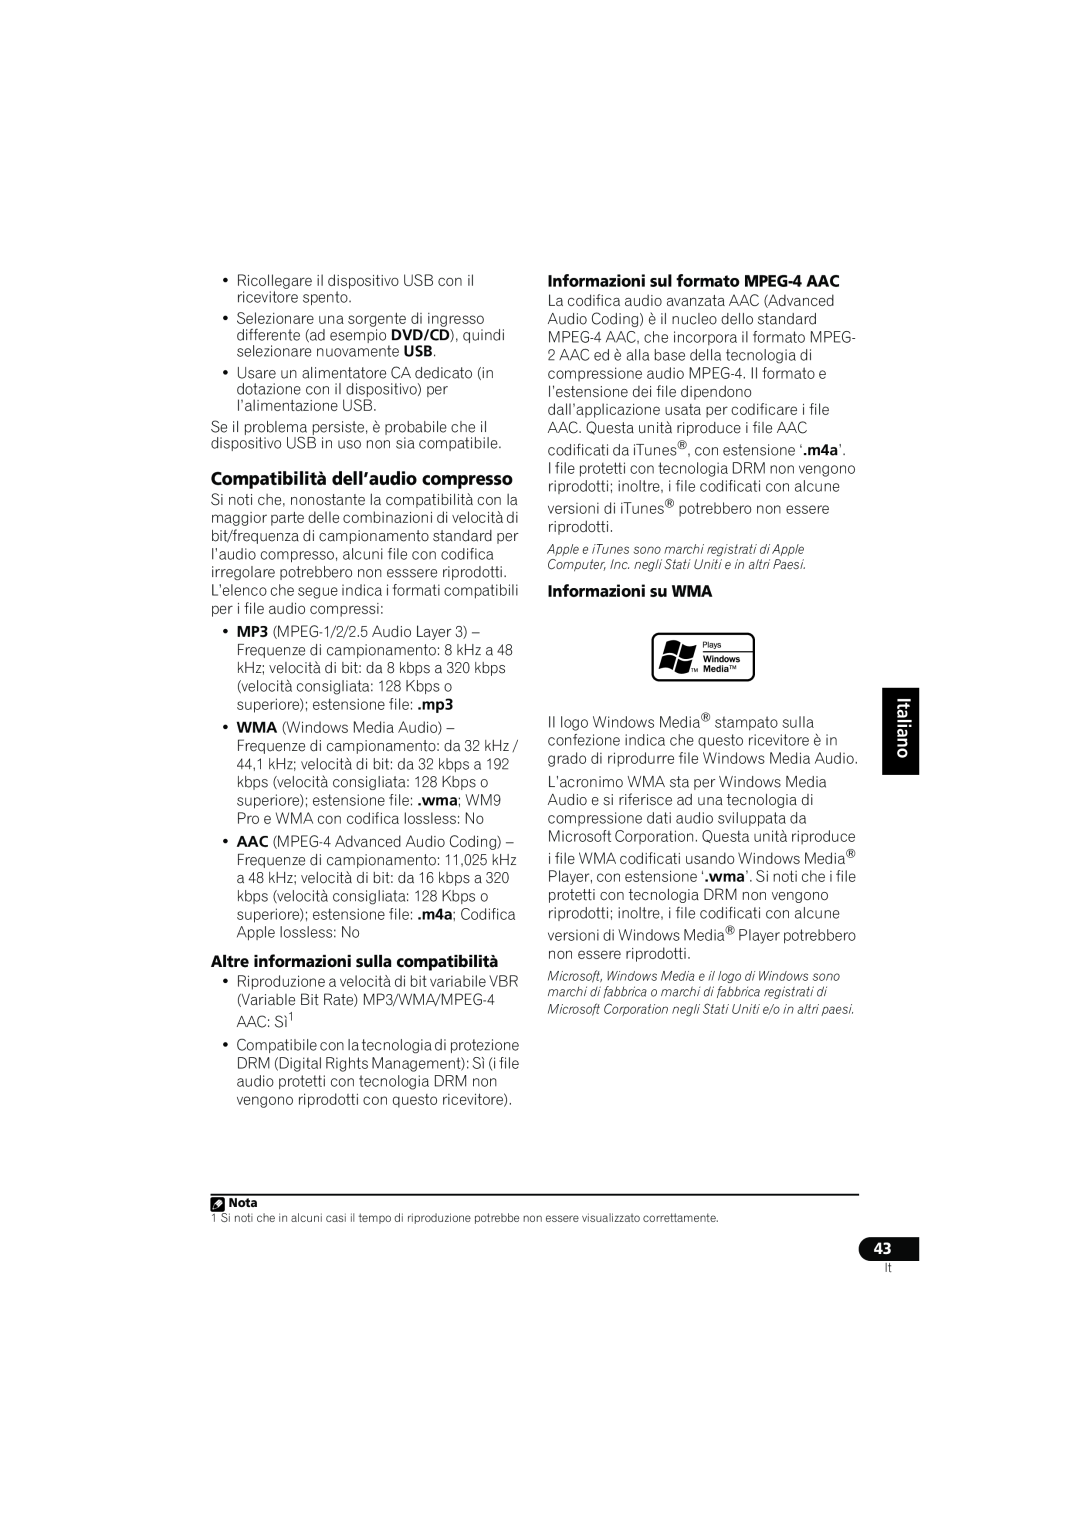 Pioneer VSX-416-S/-K manual Compatibilità dell’audio compresso, Altre informazioni sulla compatibilità, Informazioni su WMA 